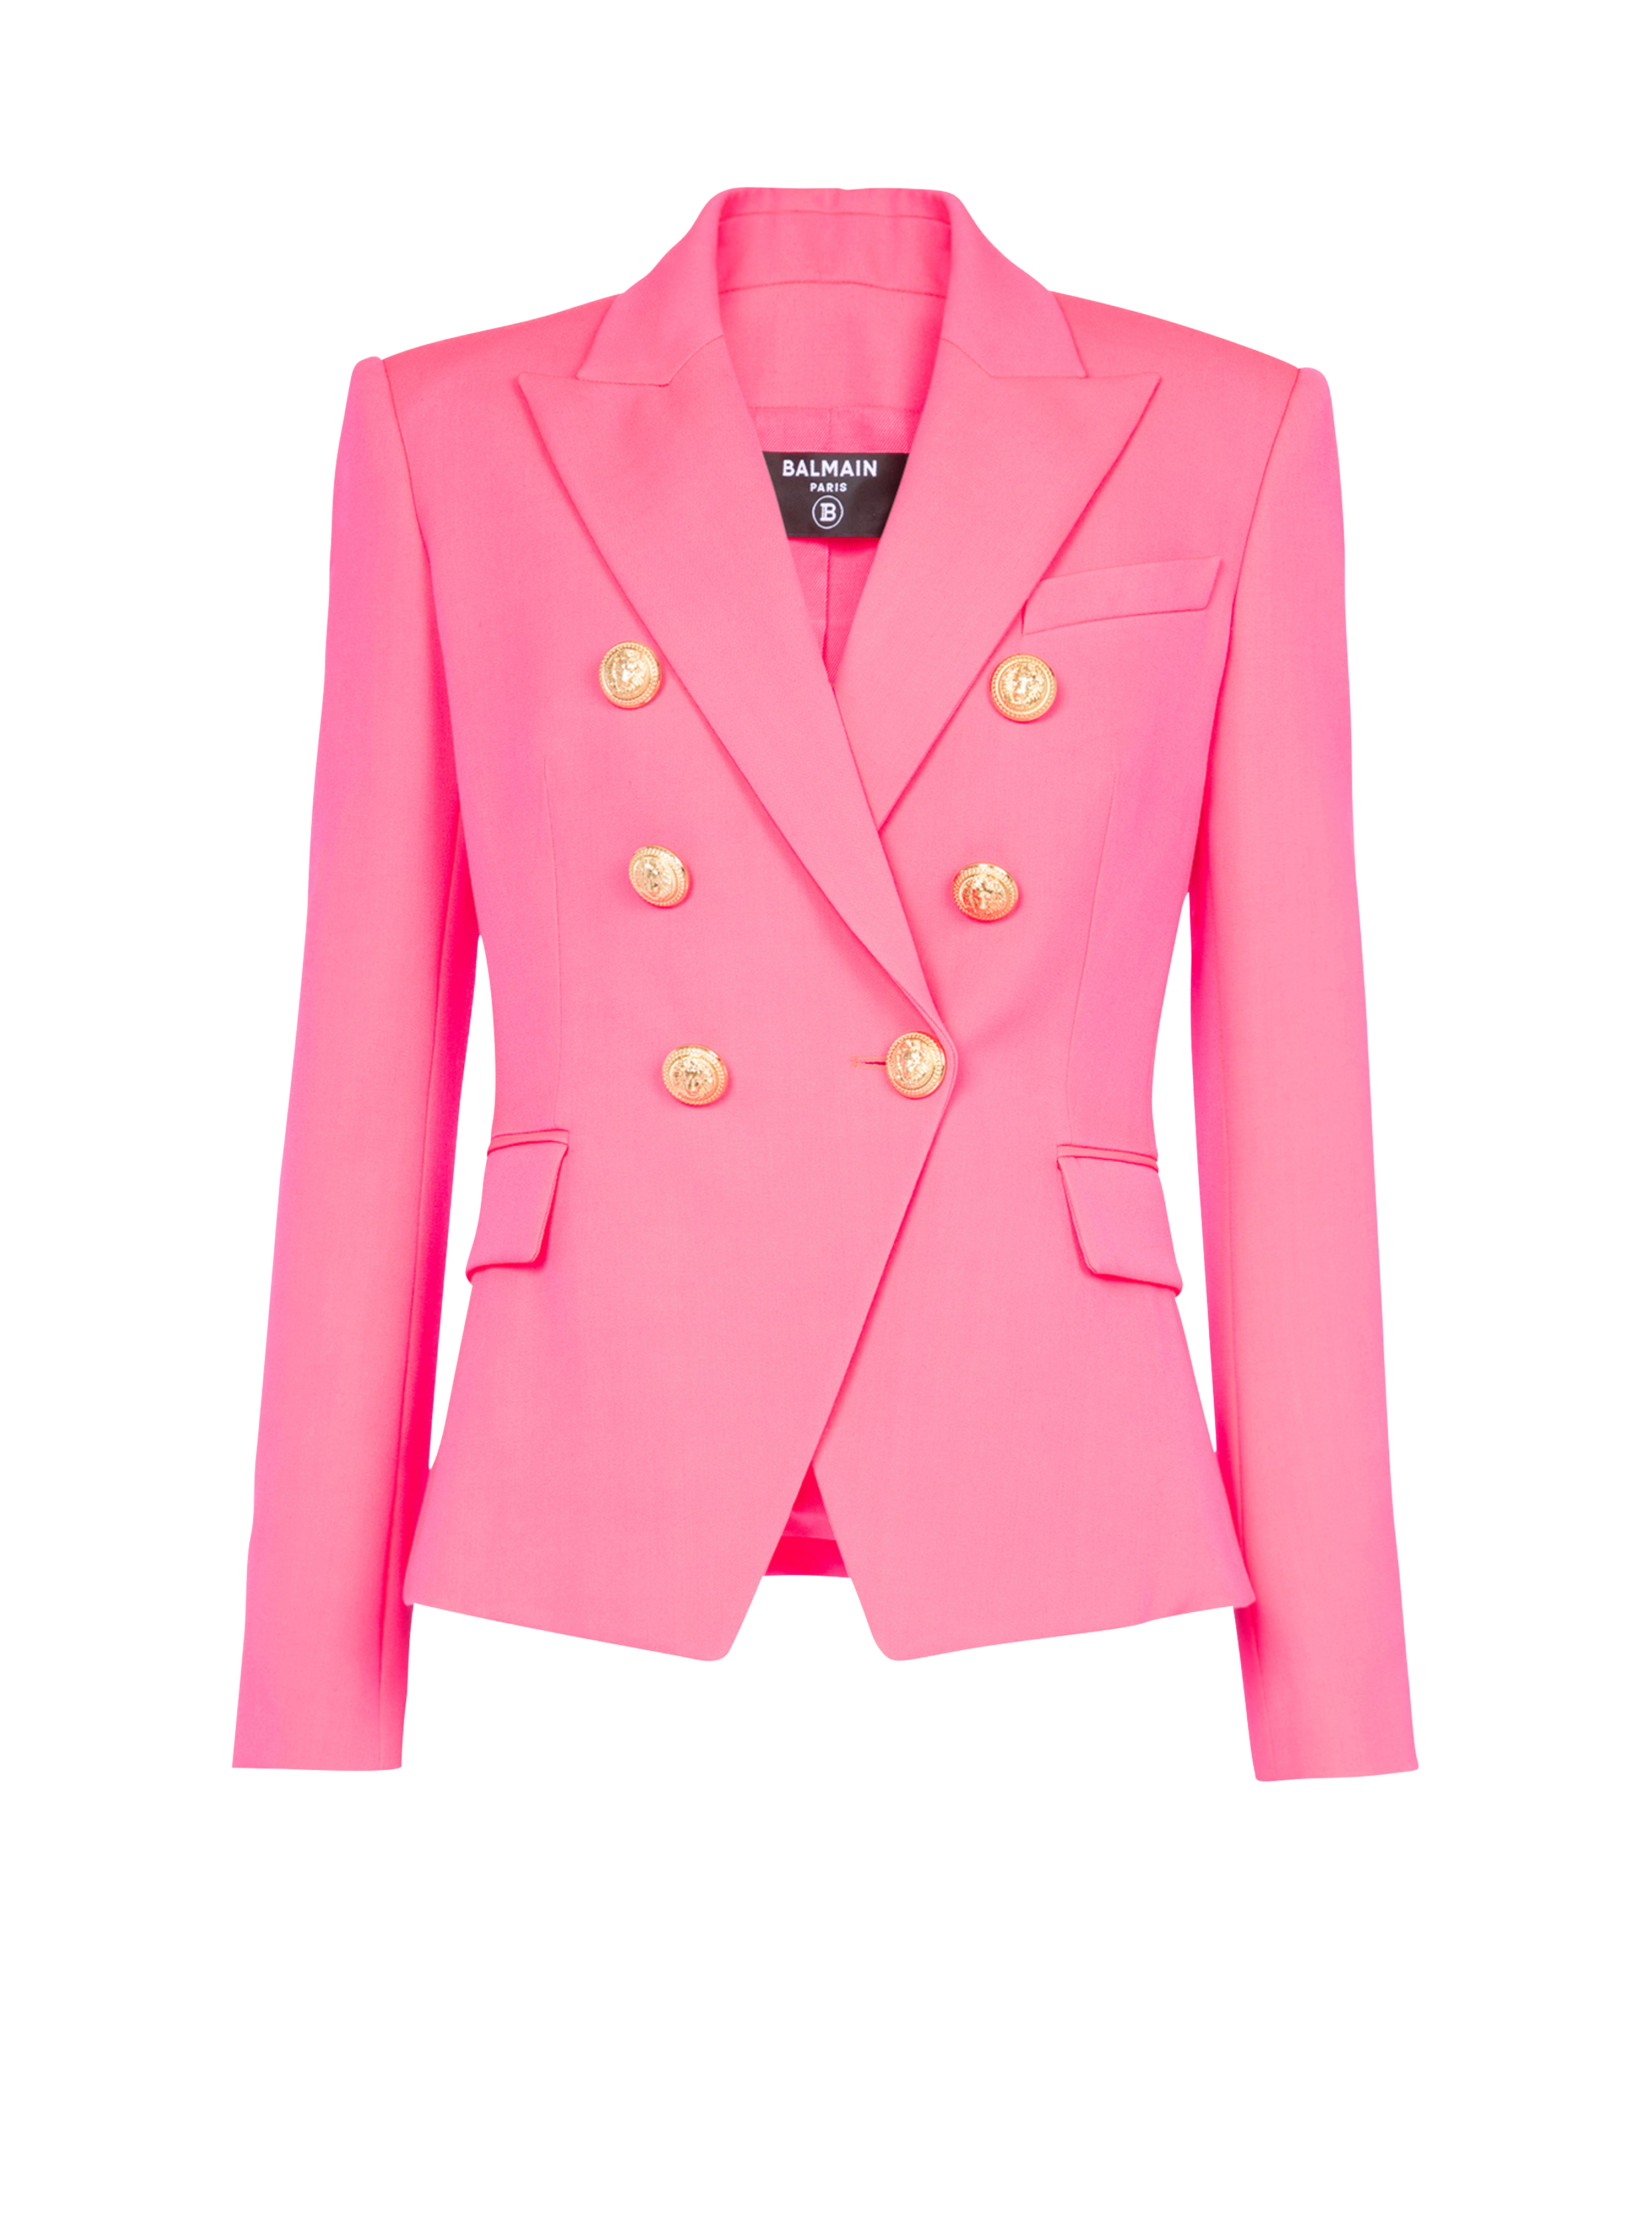 双排扣开合夹克, pink